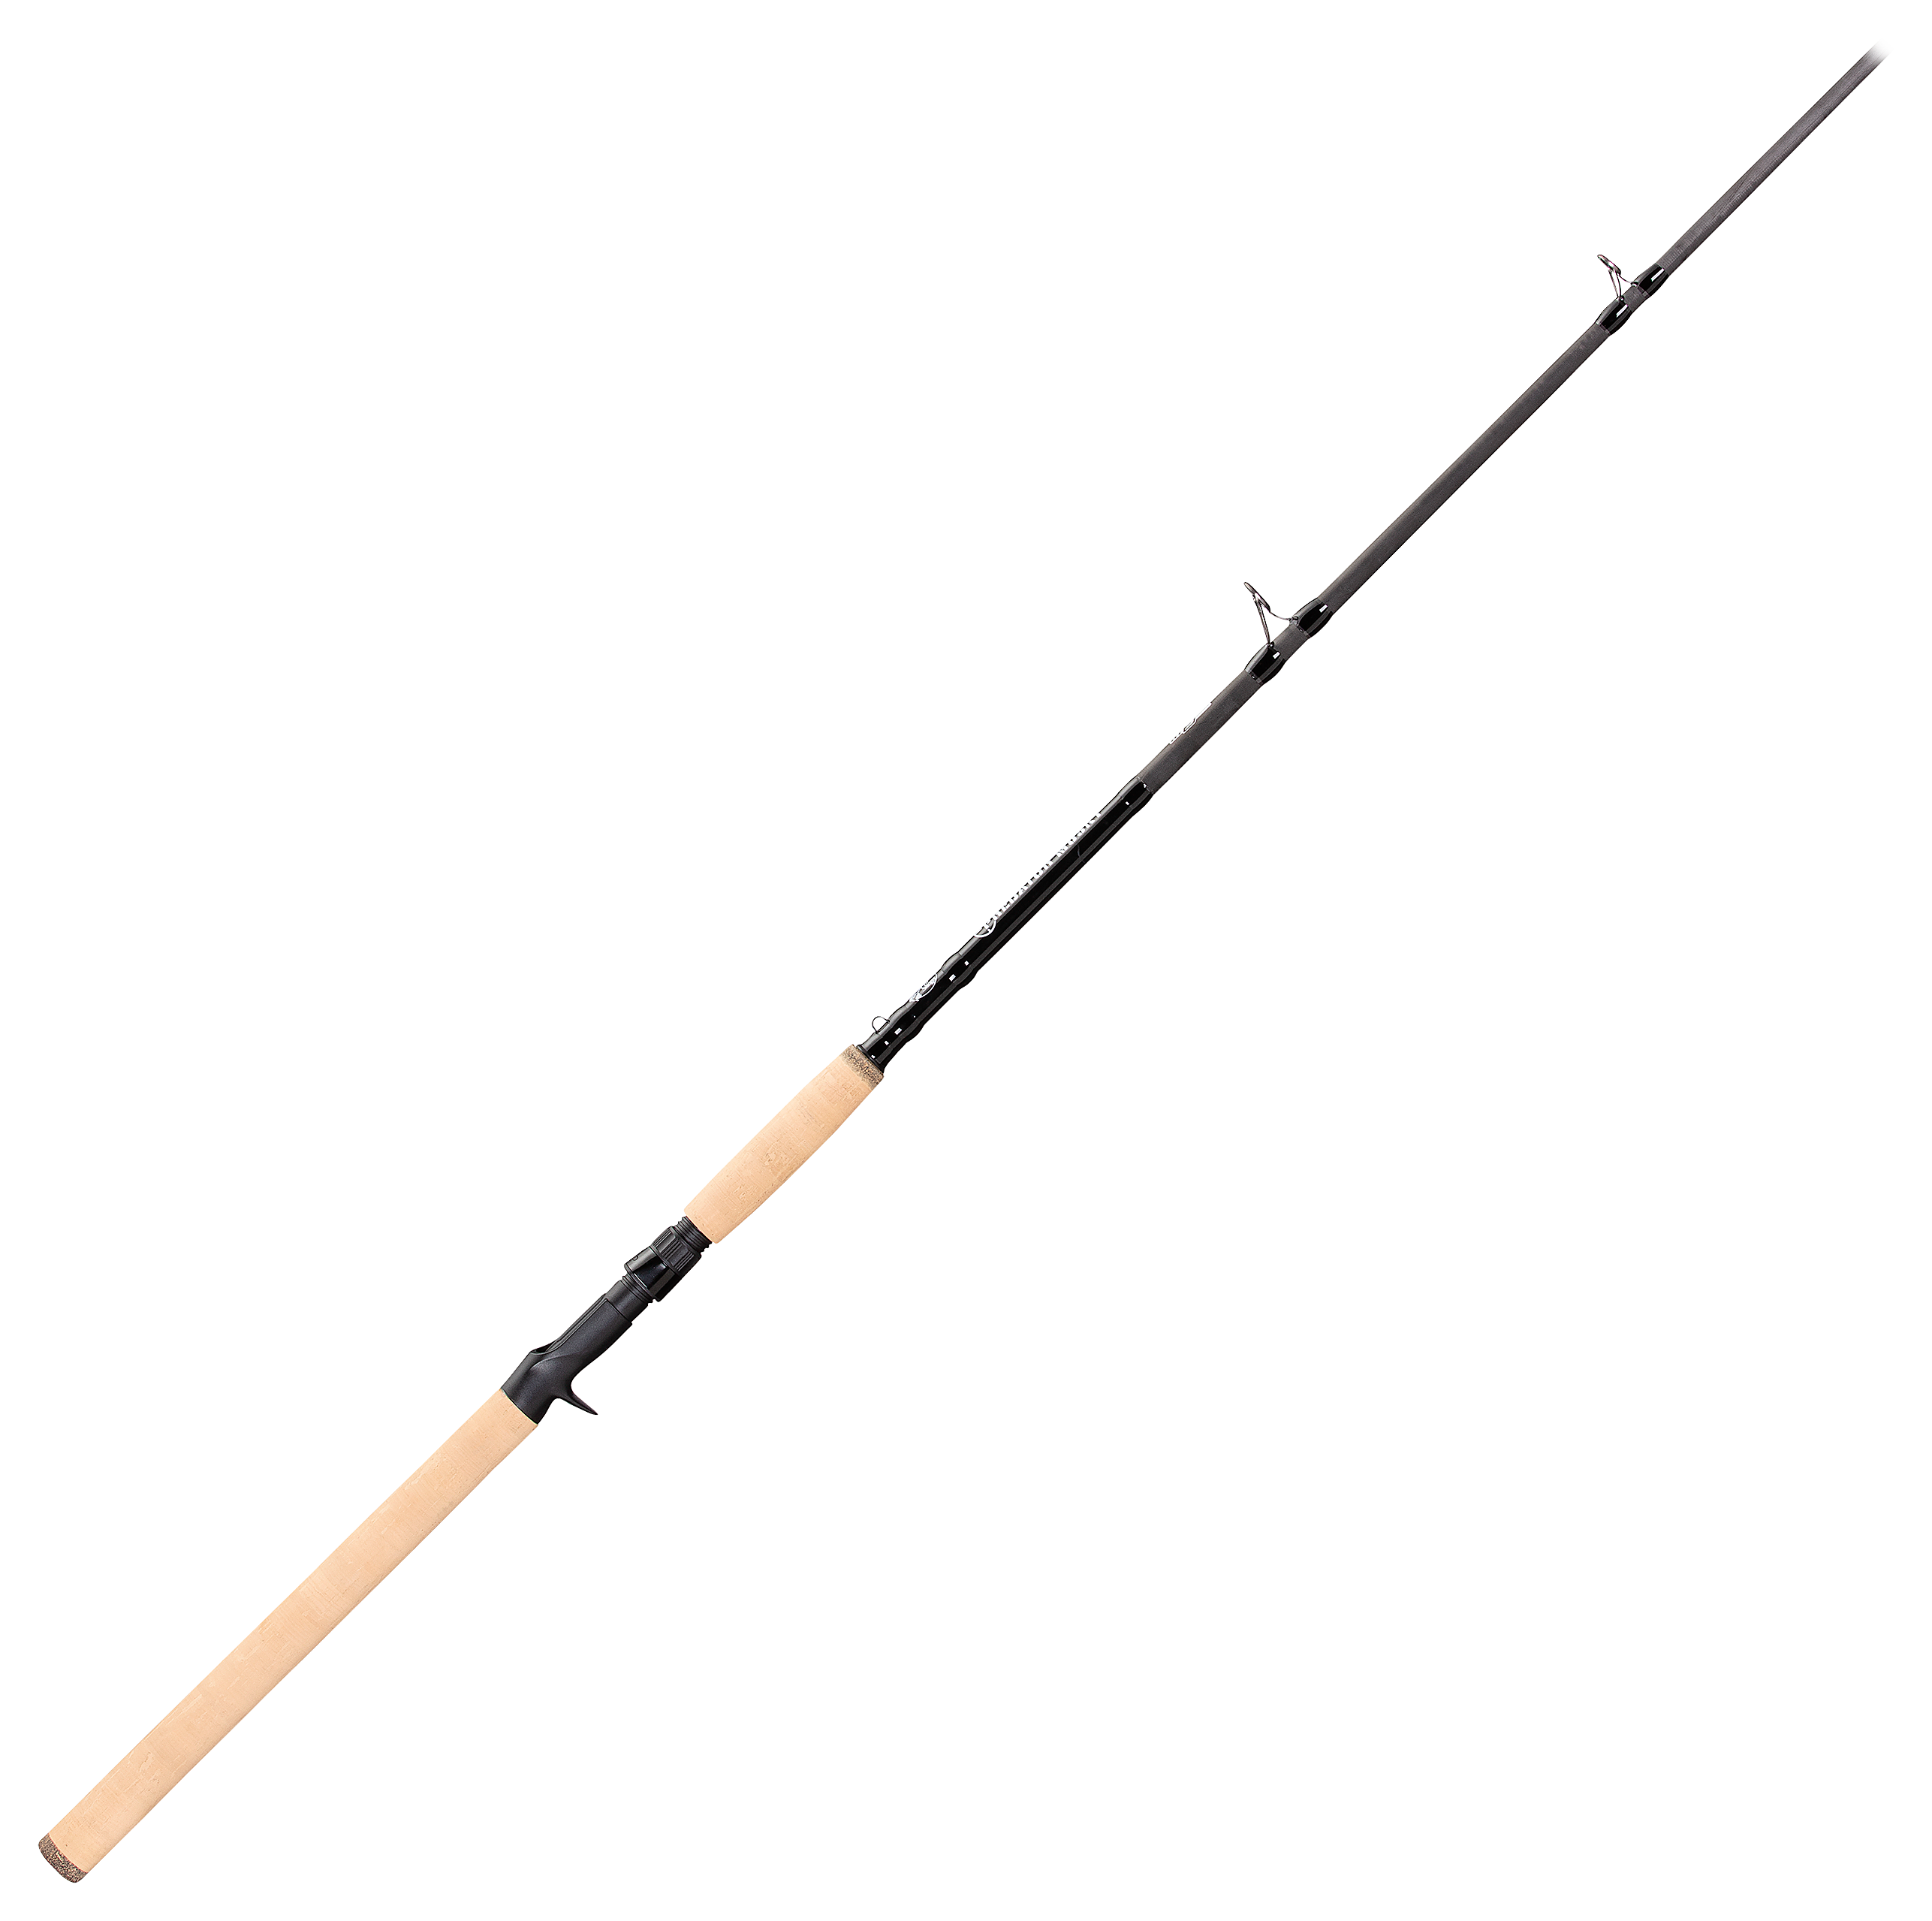 Predator fishing rods